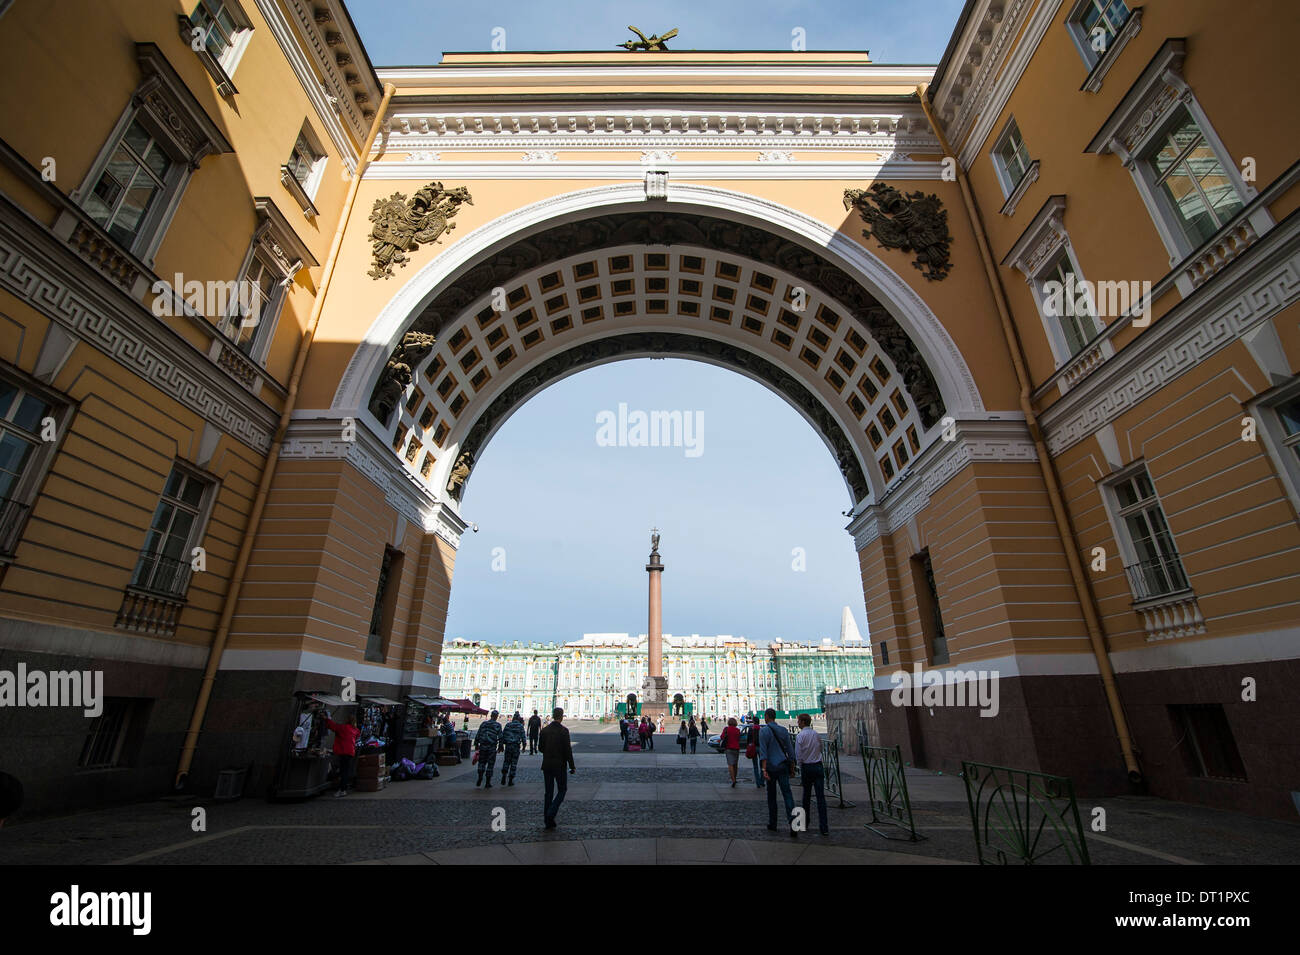 La piazza del palazzo con la colonna di Alexander di fronte all'Eremo (Palazzo d'inverno), sito UNESCO, San Pietroburgo, Russia Foto Stock